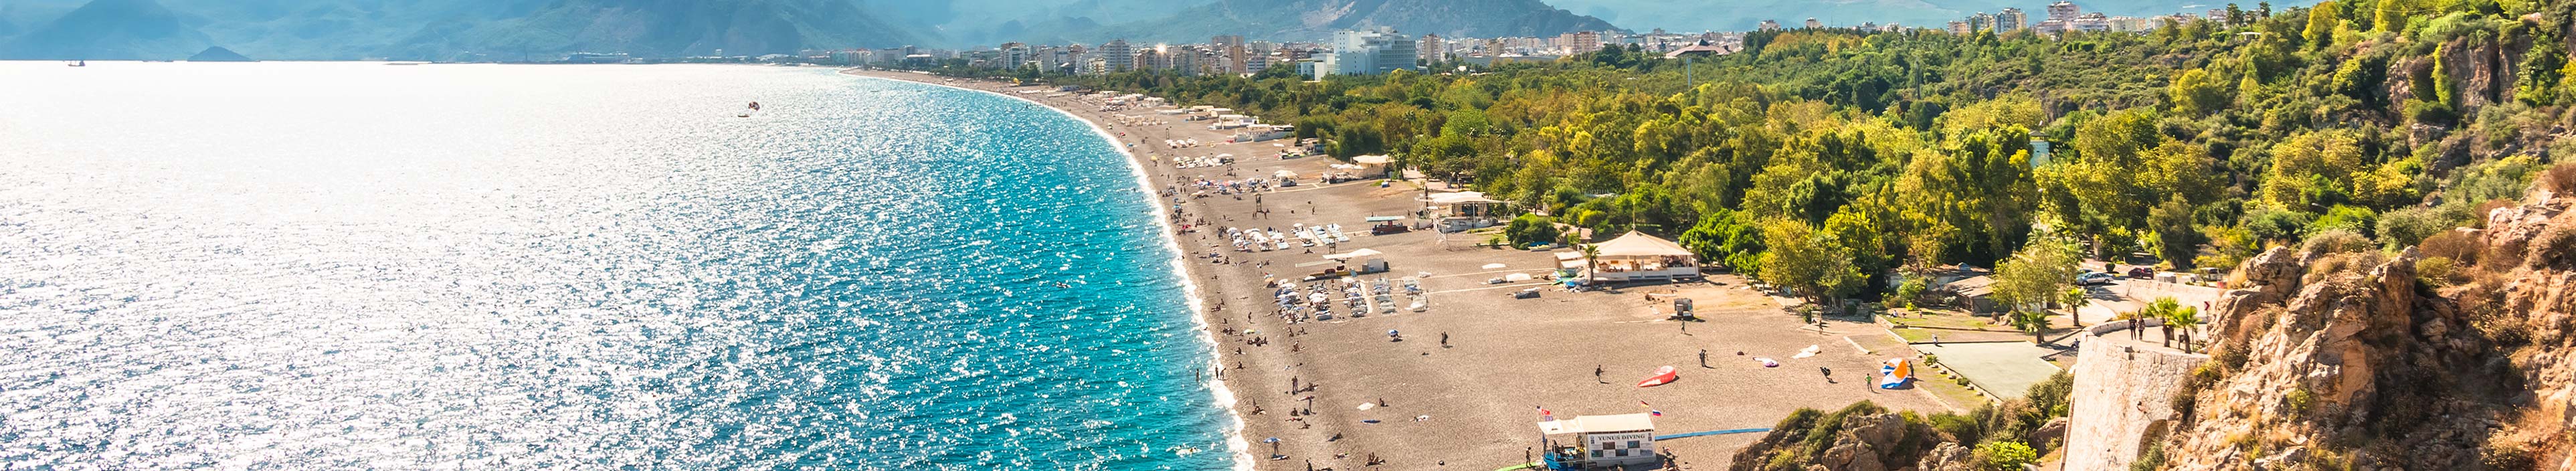 Strand von Antalya während einer Pauschalreise.